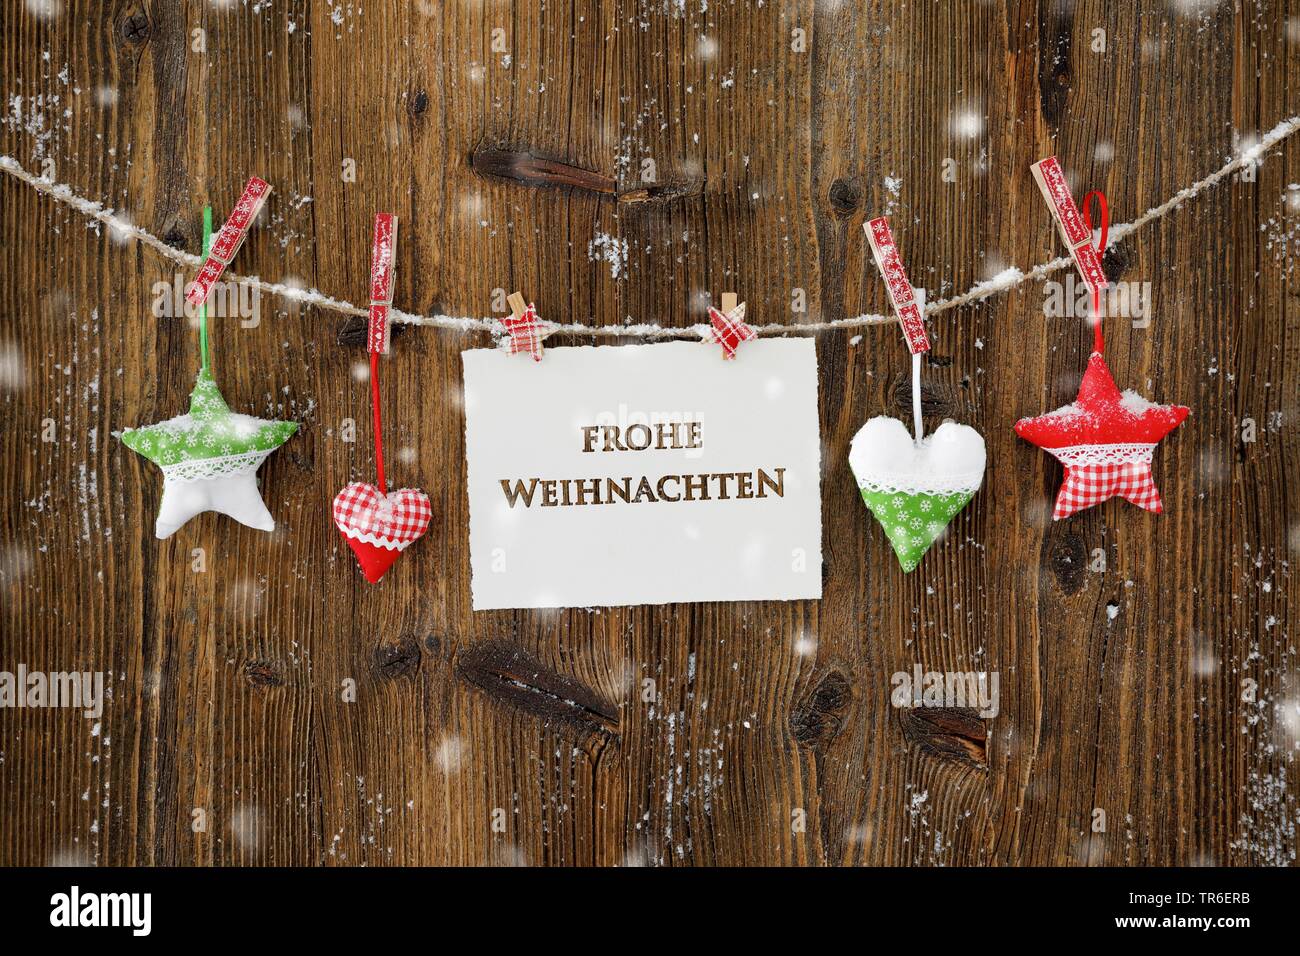 Weihnachtsdekoration mit Herzen und Sterne in Suisse, Frohe Weihnachten,  frohe Weihnachten, Schweiz Stockfotografie - Alamy